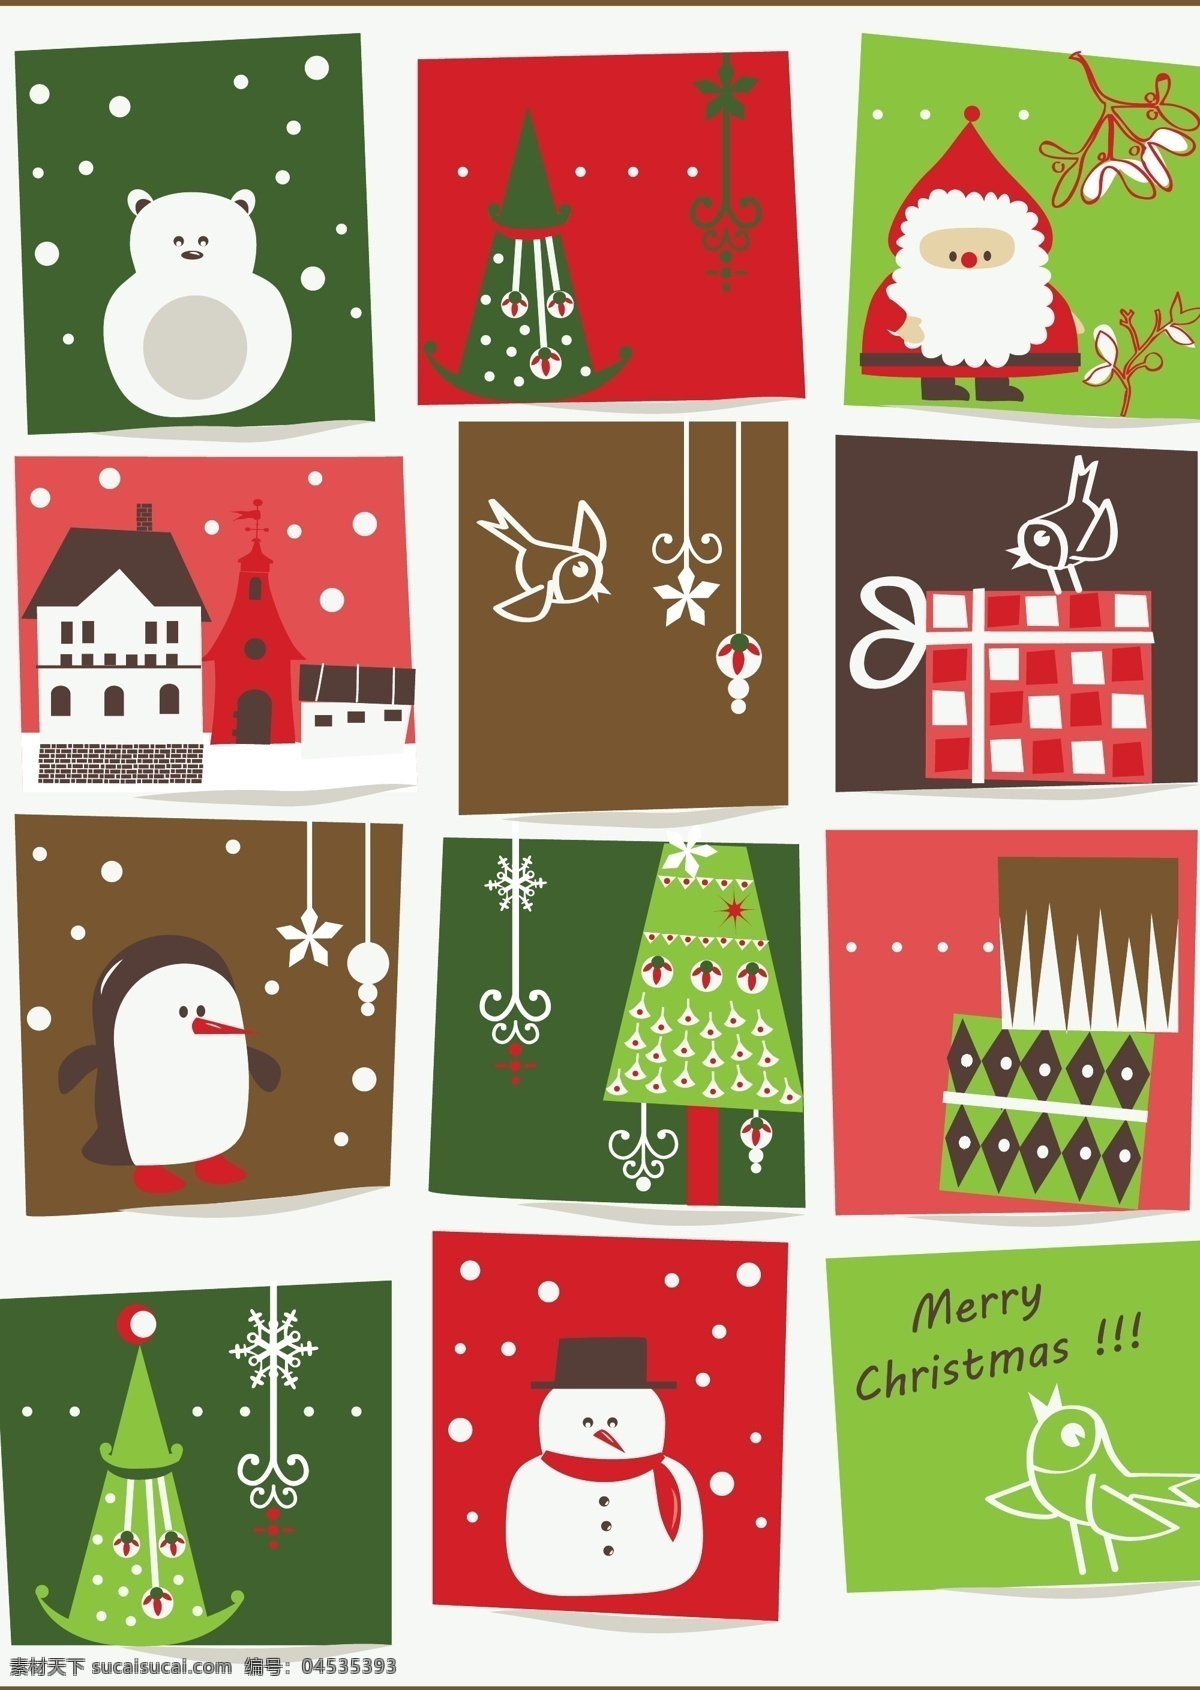 圣诞节 房子 卡通素材 企鹅 圣诞节素材 圣诞老人 圣诞树 雪人 节日素材